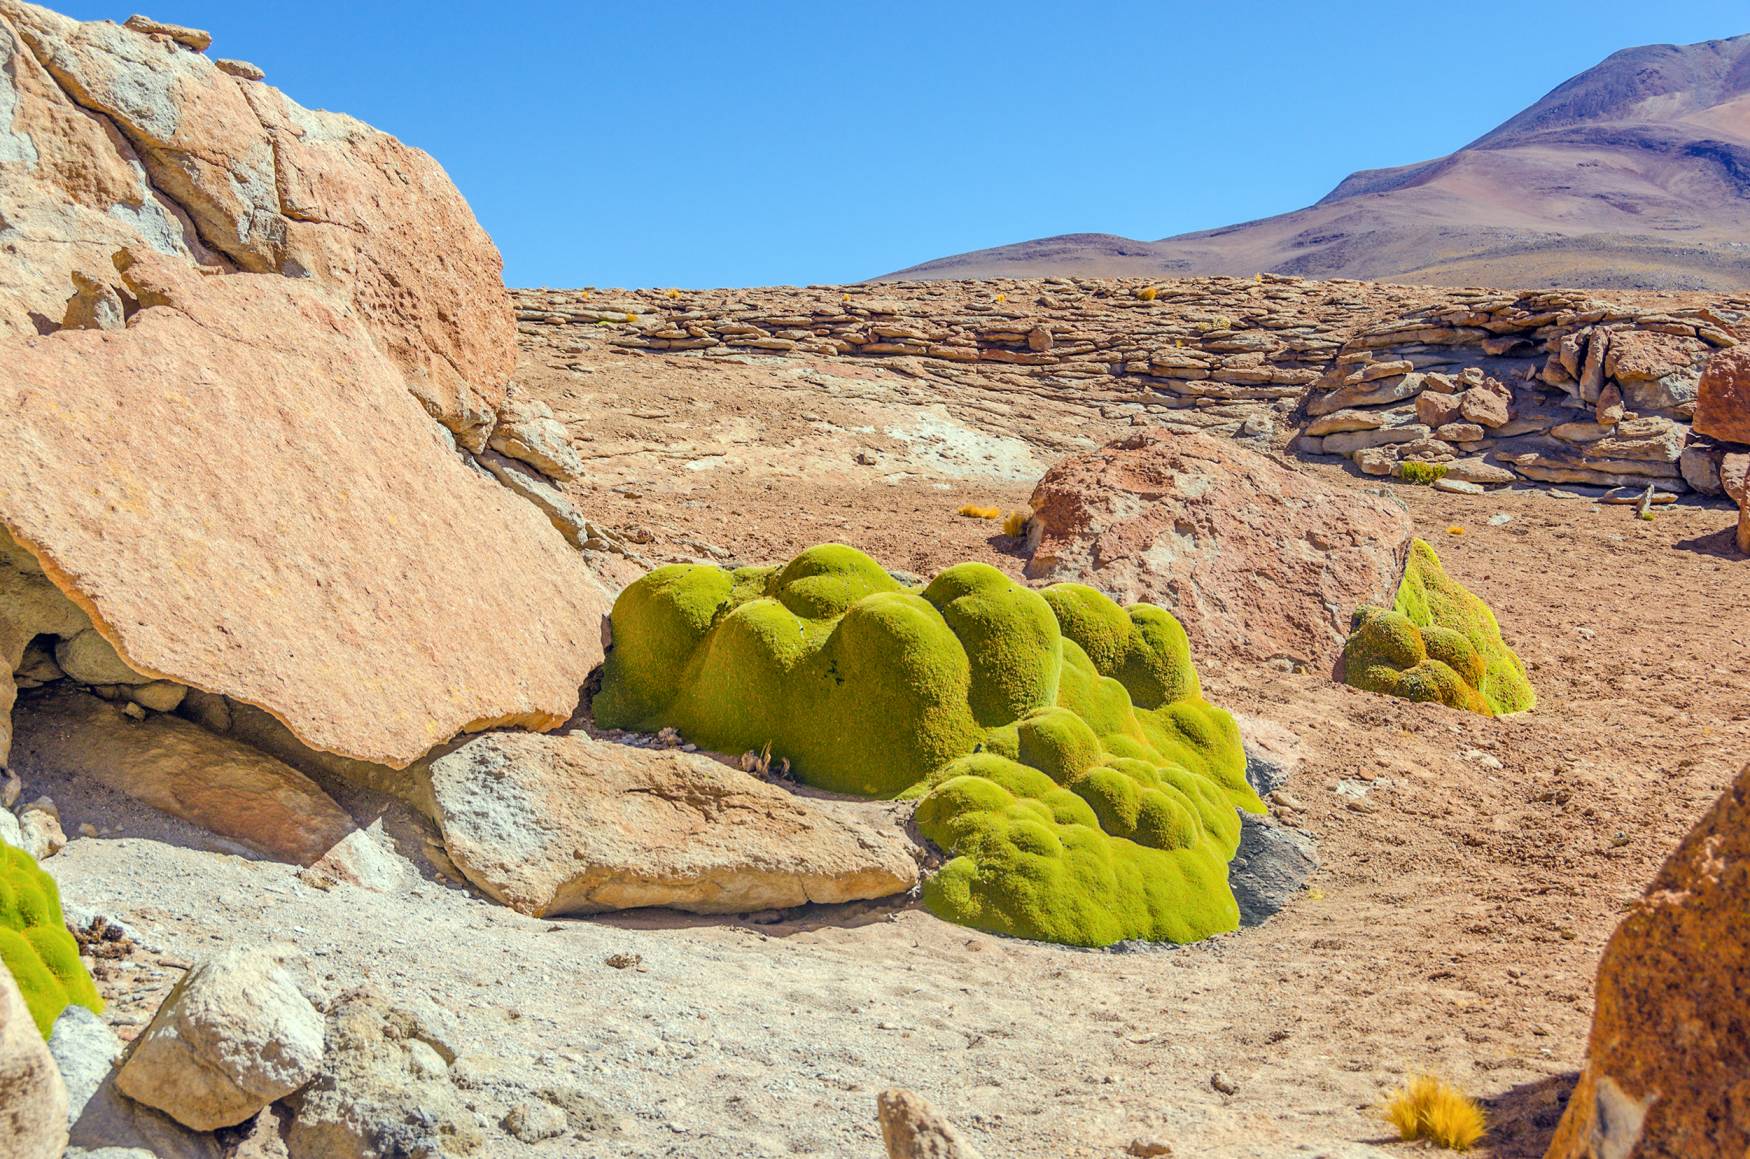 La surprenante yareta, plante grasse typique de l'Altiplano.